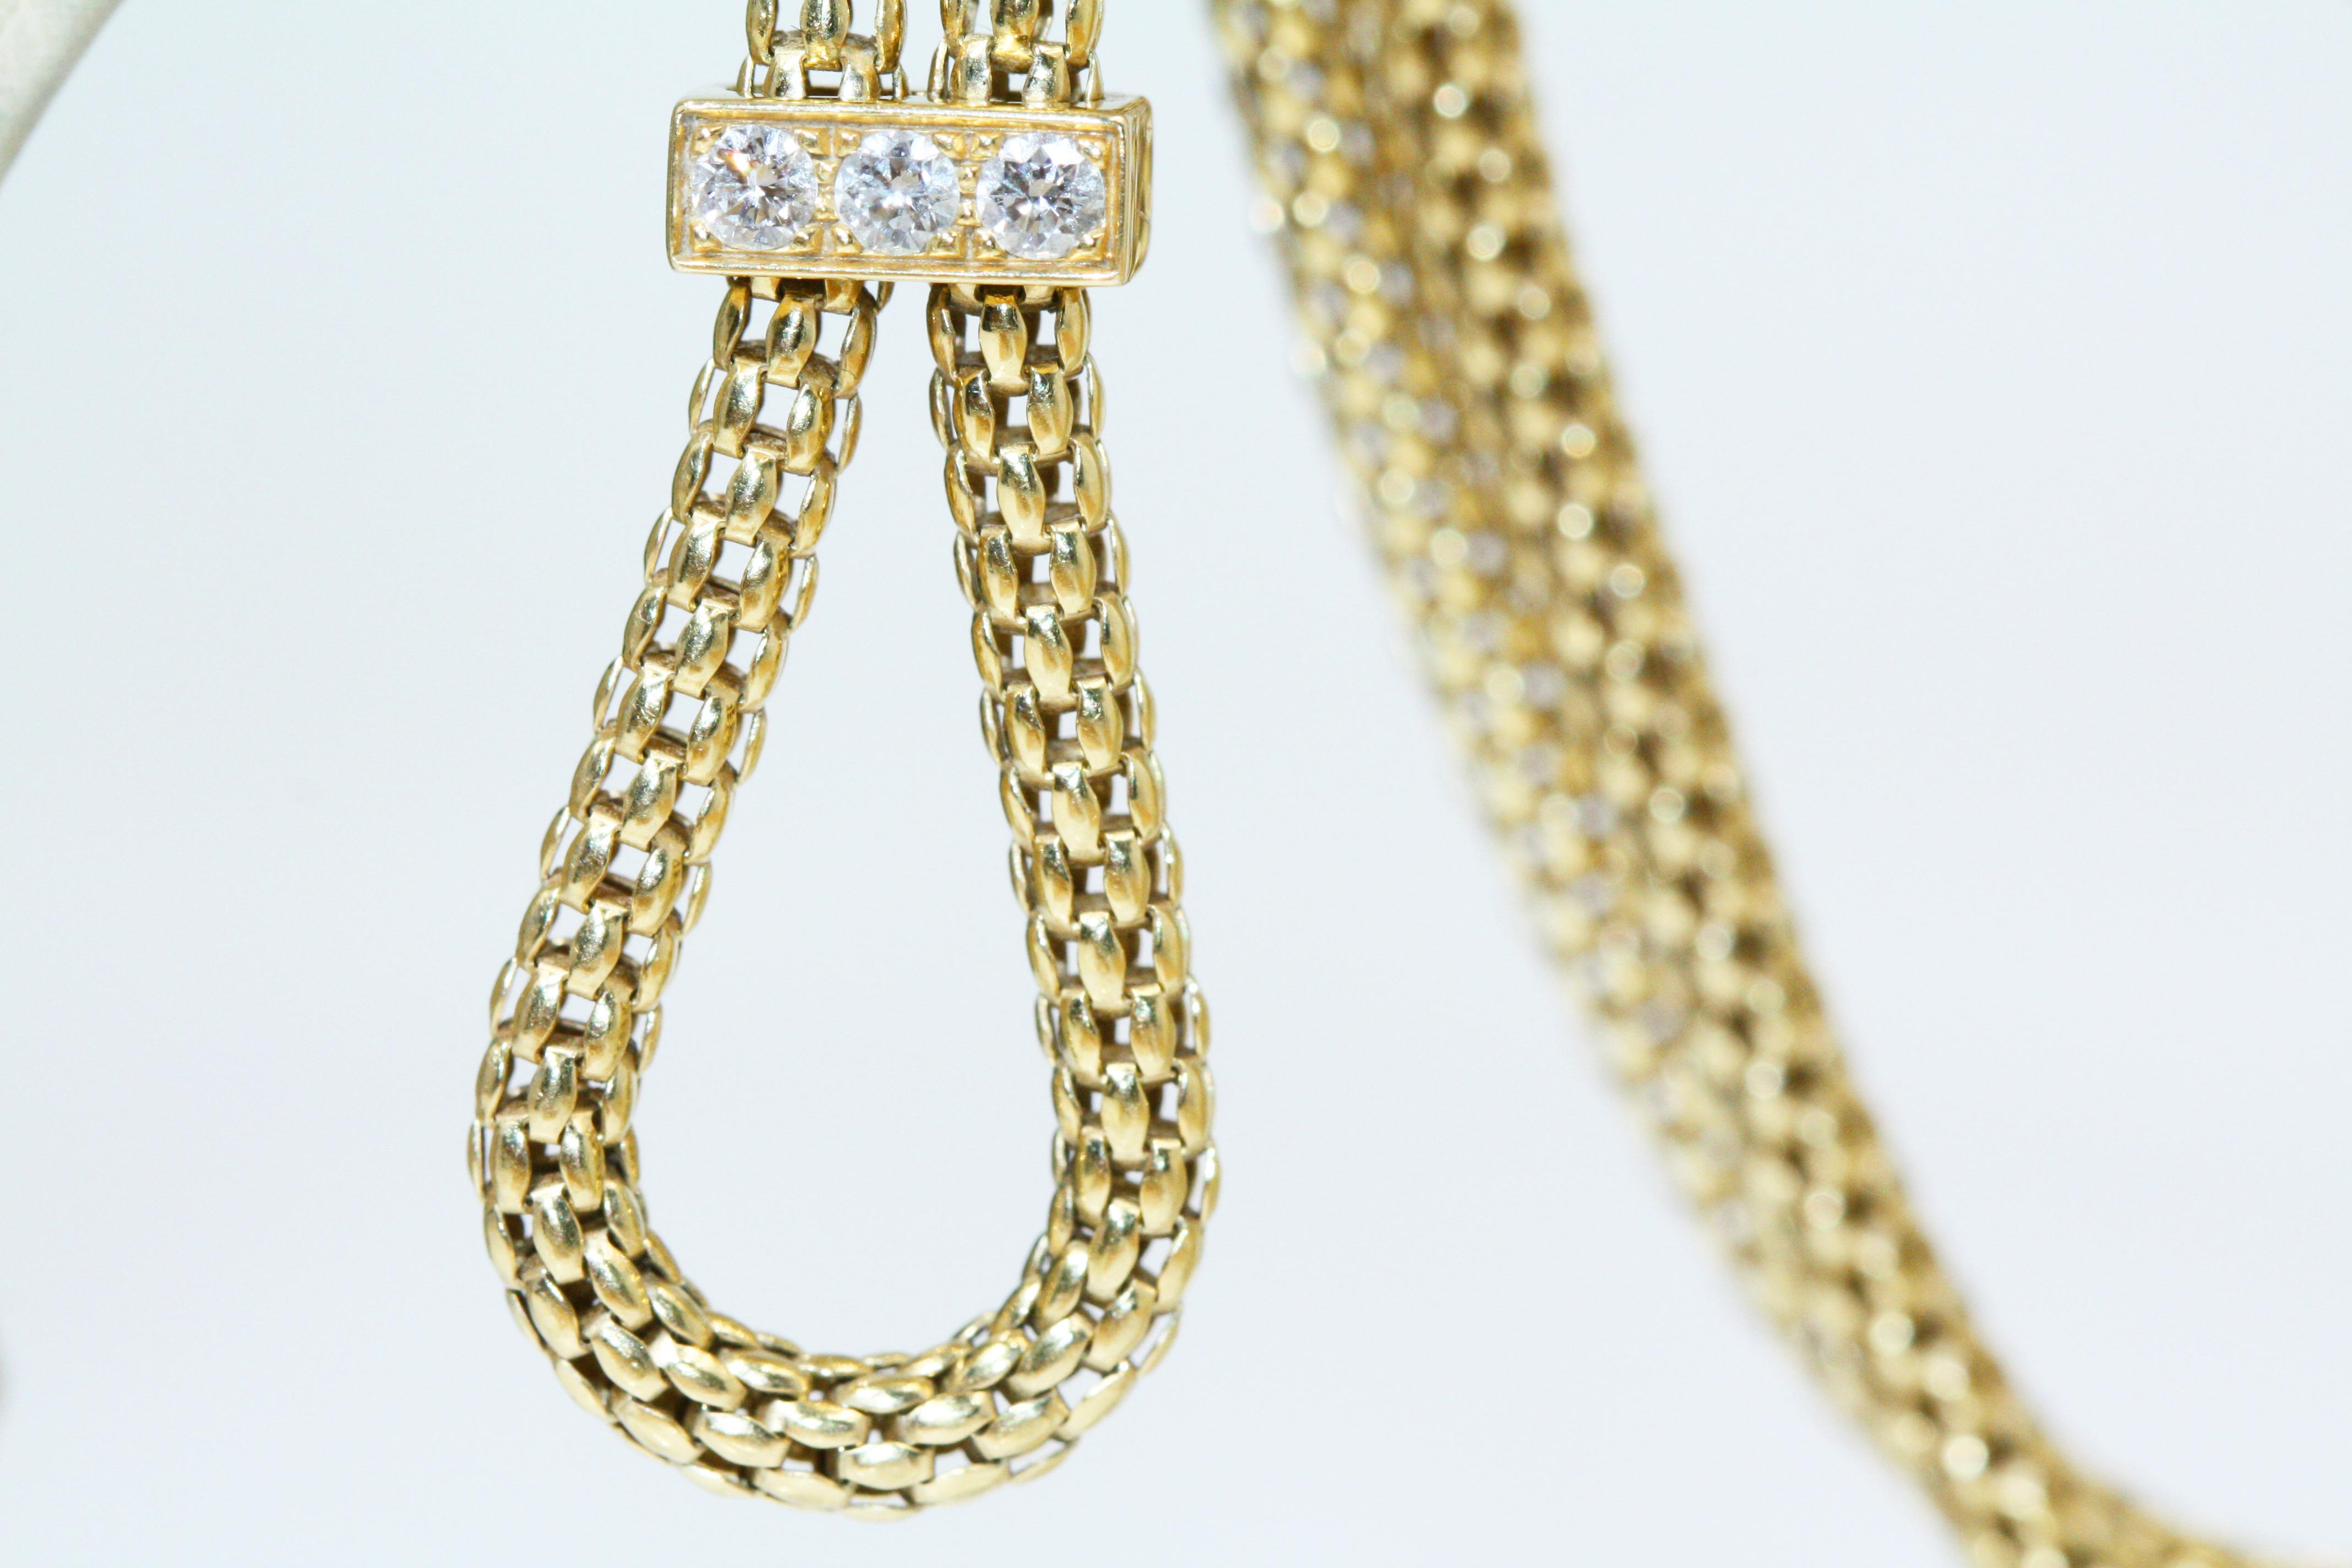 Cartier Panthère de Bracelet, Gold, Lacquer, Diamond, Tsavorite Garnets, Onyx For Sale 6